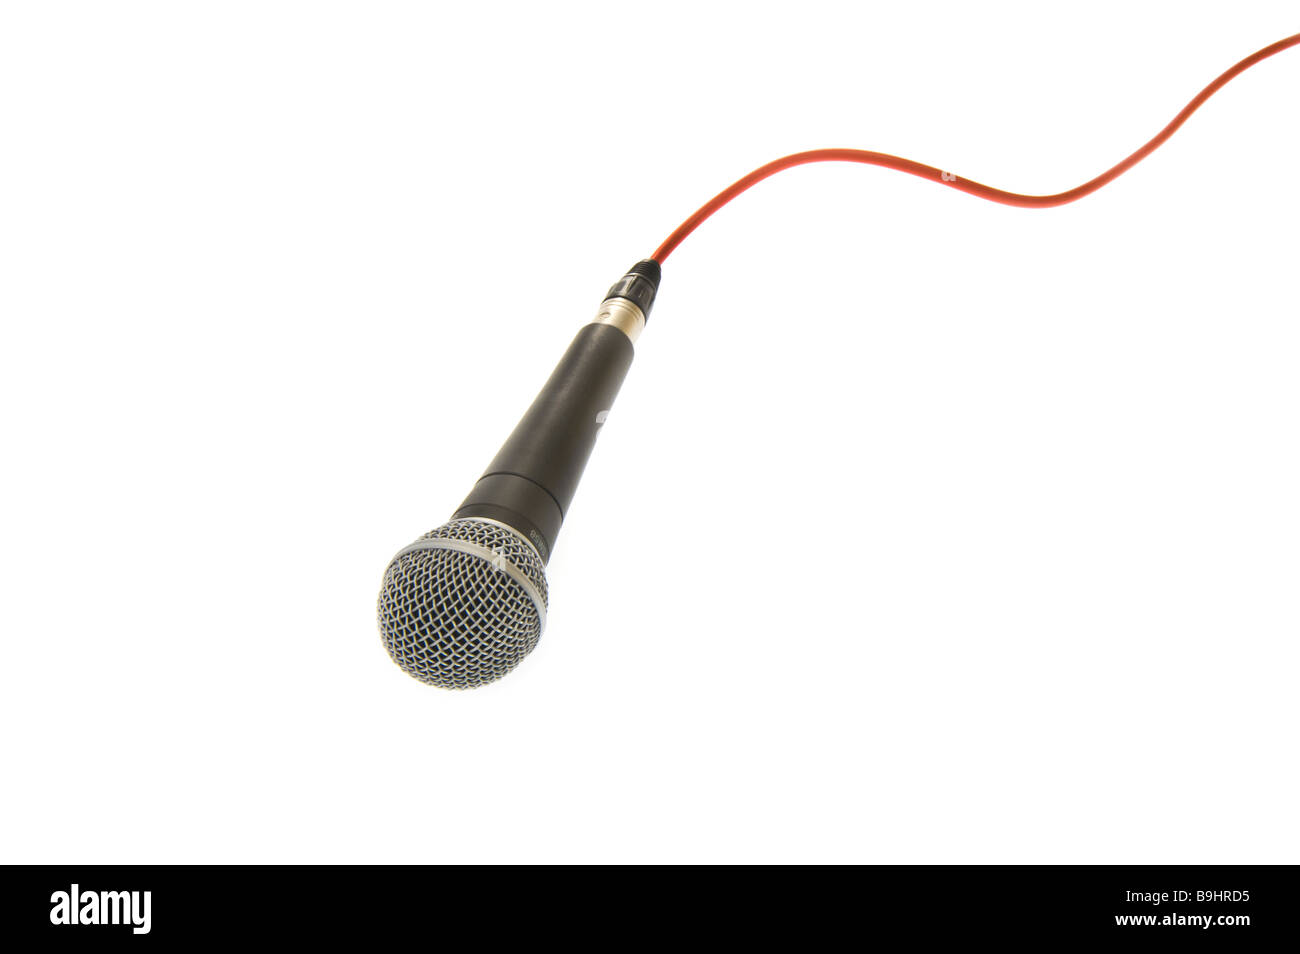 Micro microphone mic mikrophone mike avec ligne rouge sur le fil de câble connexion connexion ligne singer chanter musique concours vision sym Banque D'Images